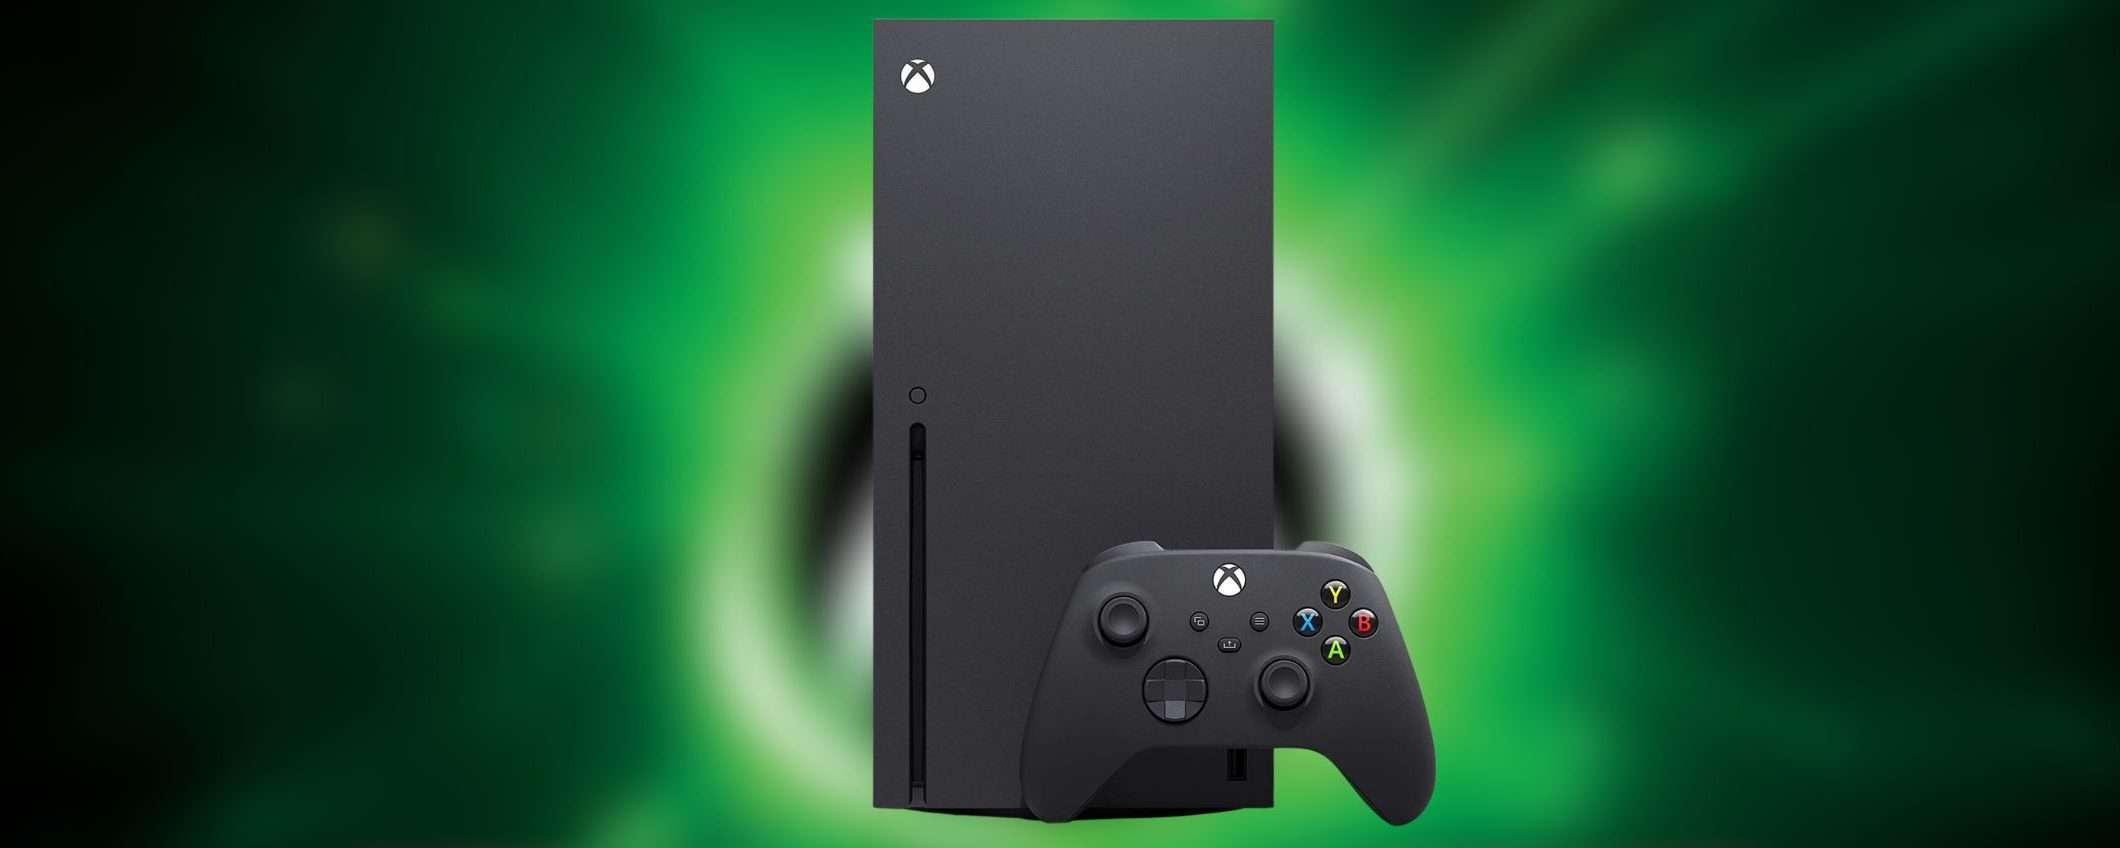 Xbox Series X in offerta a 100 euro in meno: venduta e spedita da Amazon